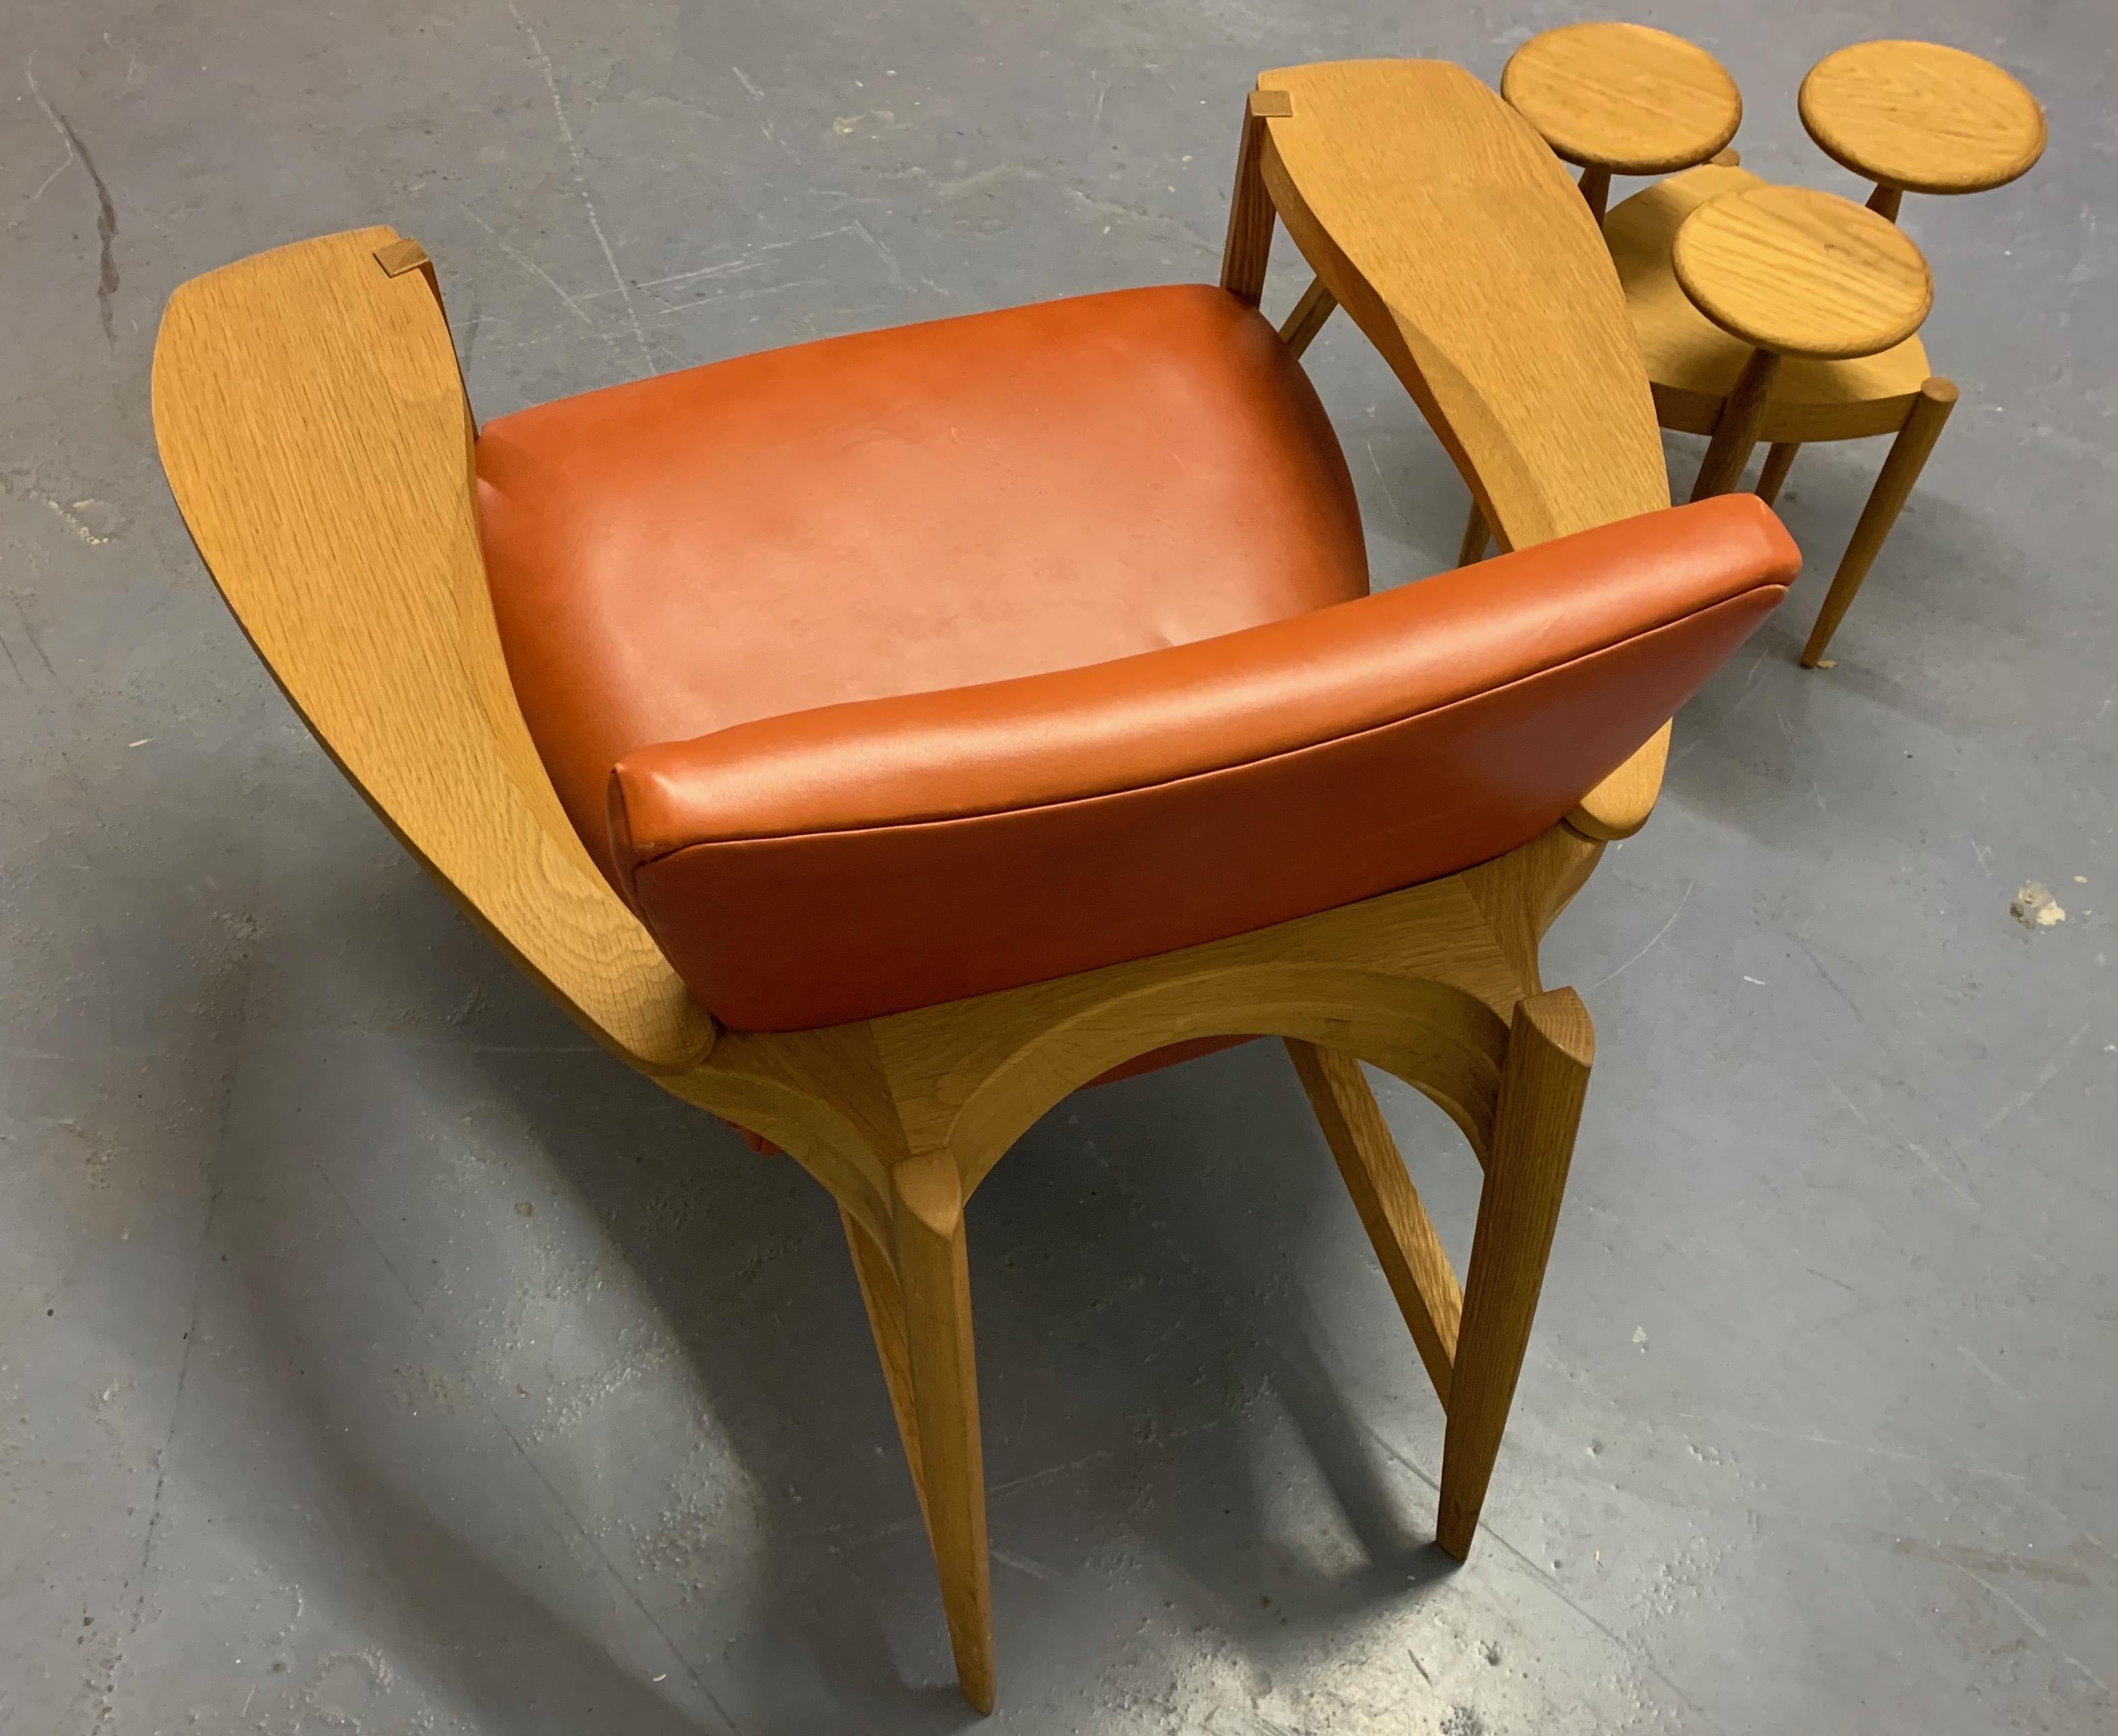 Erstaunlicher Loungesessel mit wunderbaren Linien. Ich besitze diesen Stuhl seit vielen Jahren, habe in vielen Archiven gesucht, habe aber immer noch keine Ahnung, wer ihn hergestellt hat.... Ich glaube, es handelt sich um einen in Dänemark